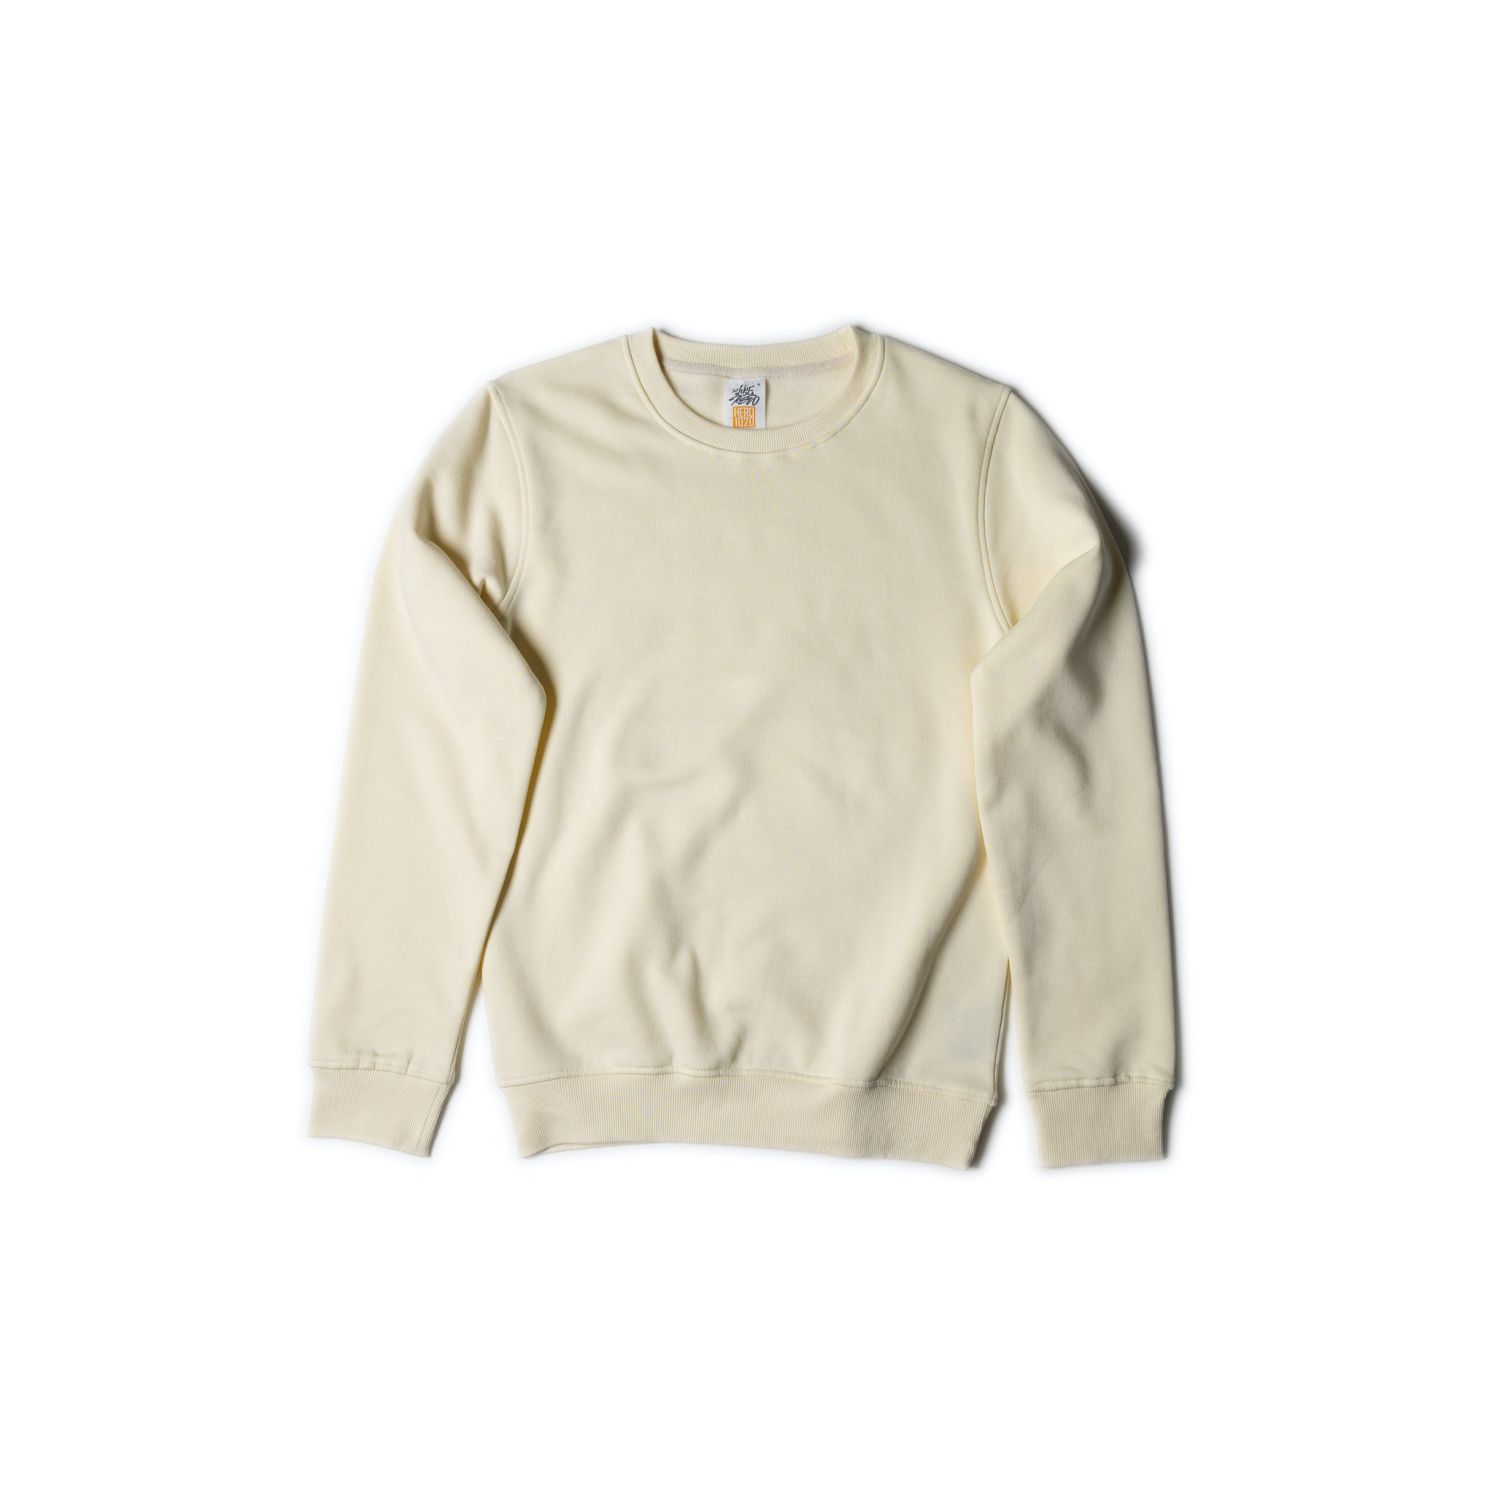 Just Like Hero Crewneck Sweatshirt #1020 Ivory